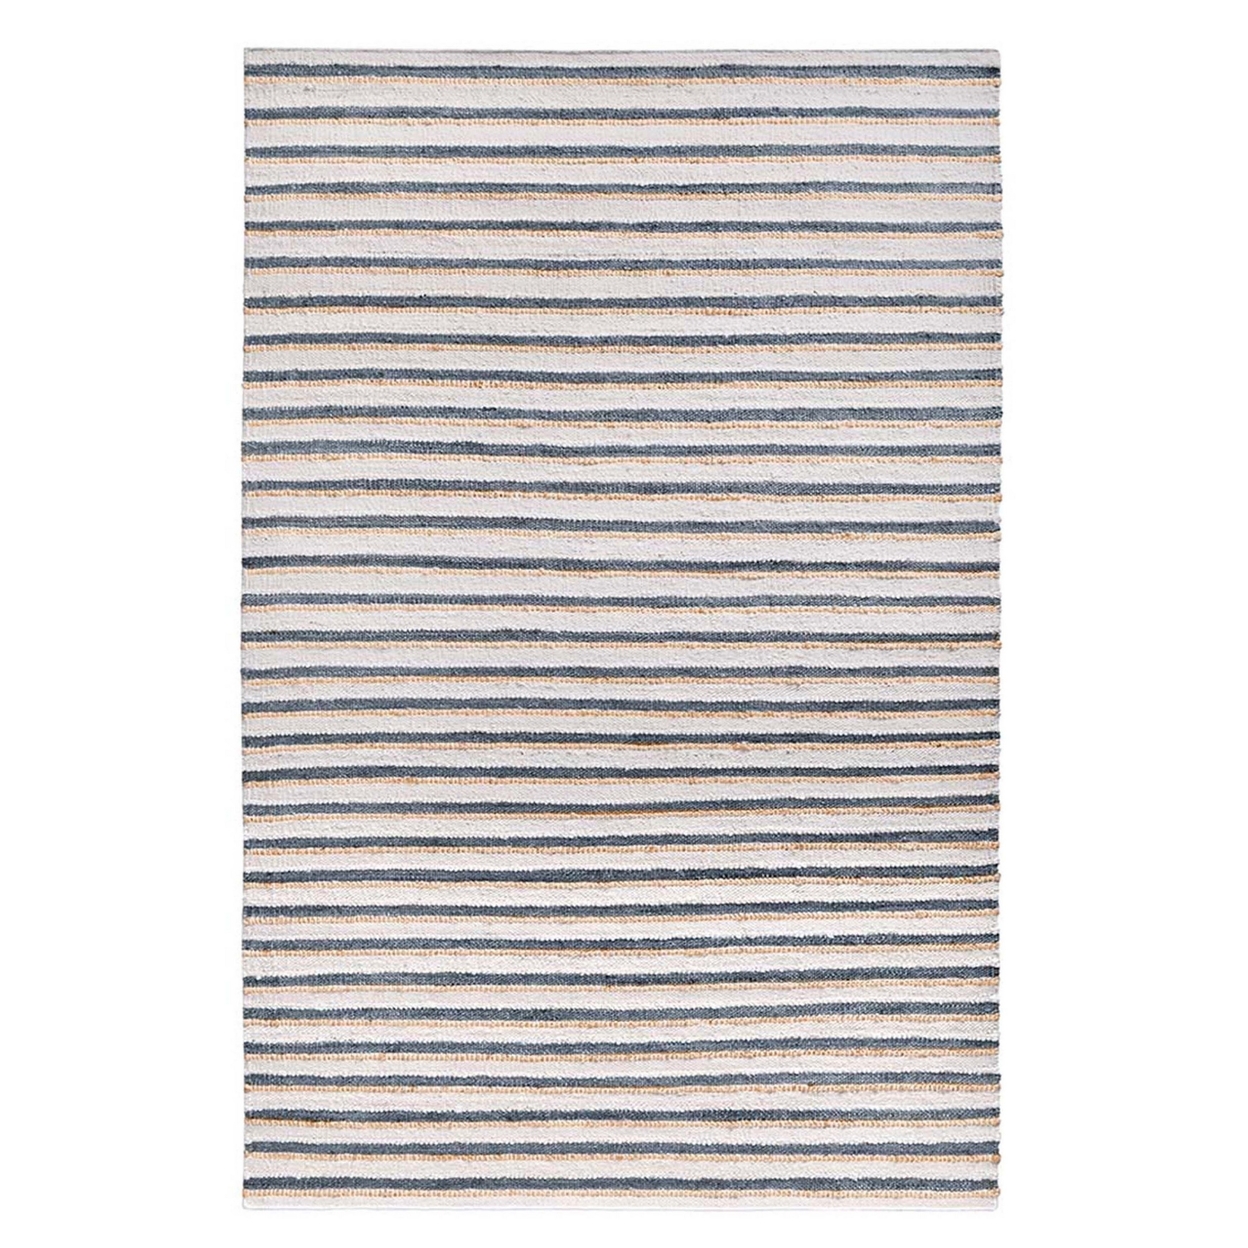 Azu 2 X 3 Handmade Small Area Rug, Classic Stripes, Ivory, Aqua Blue- Saltoro Sherpi